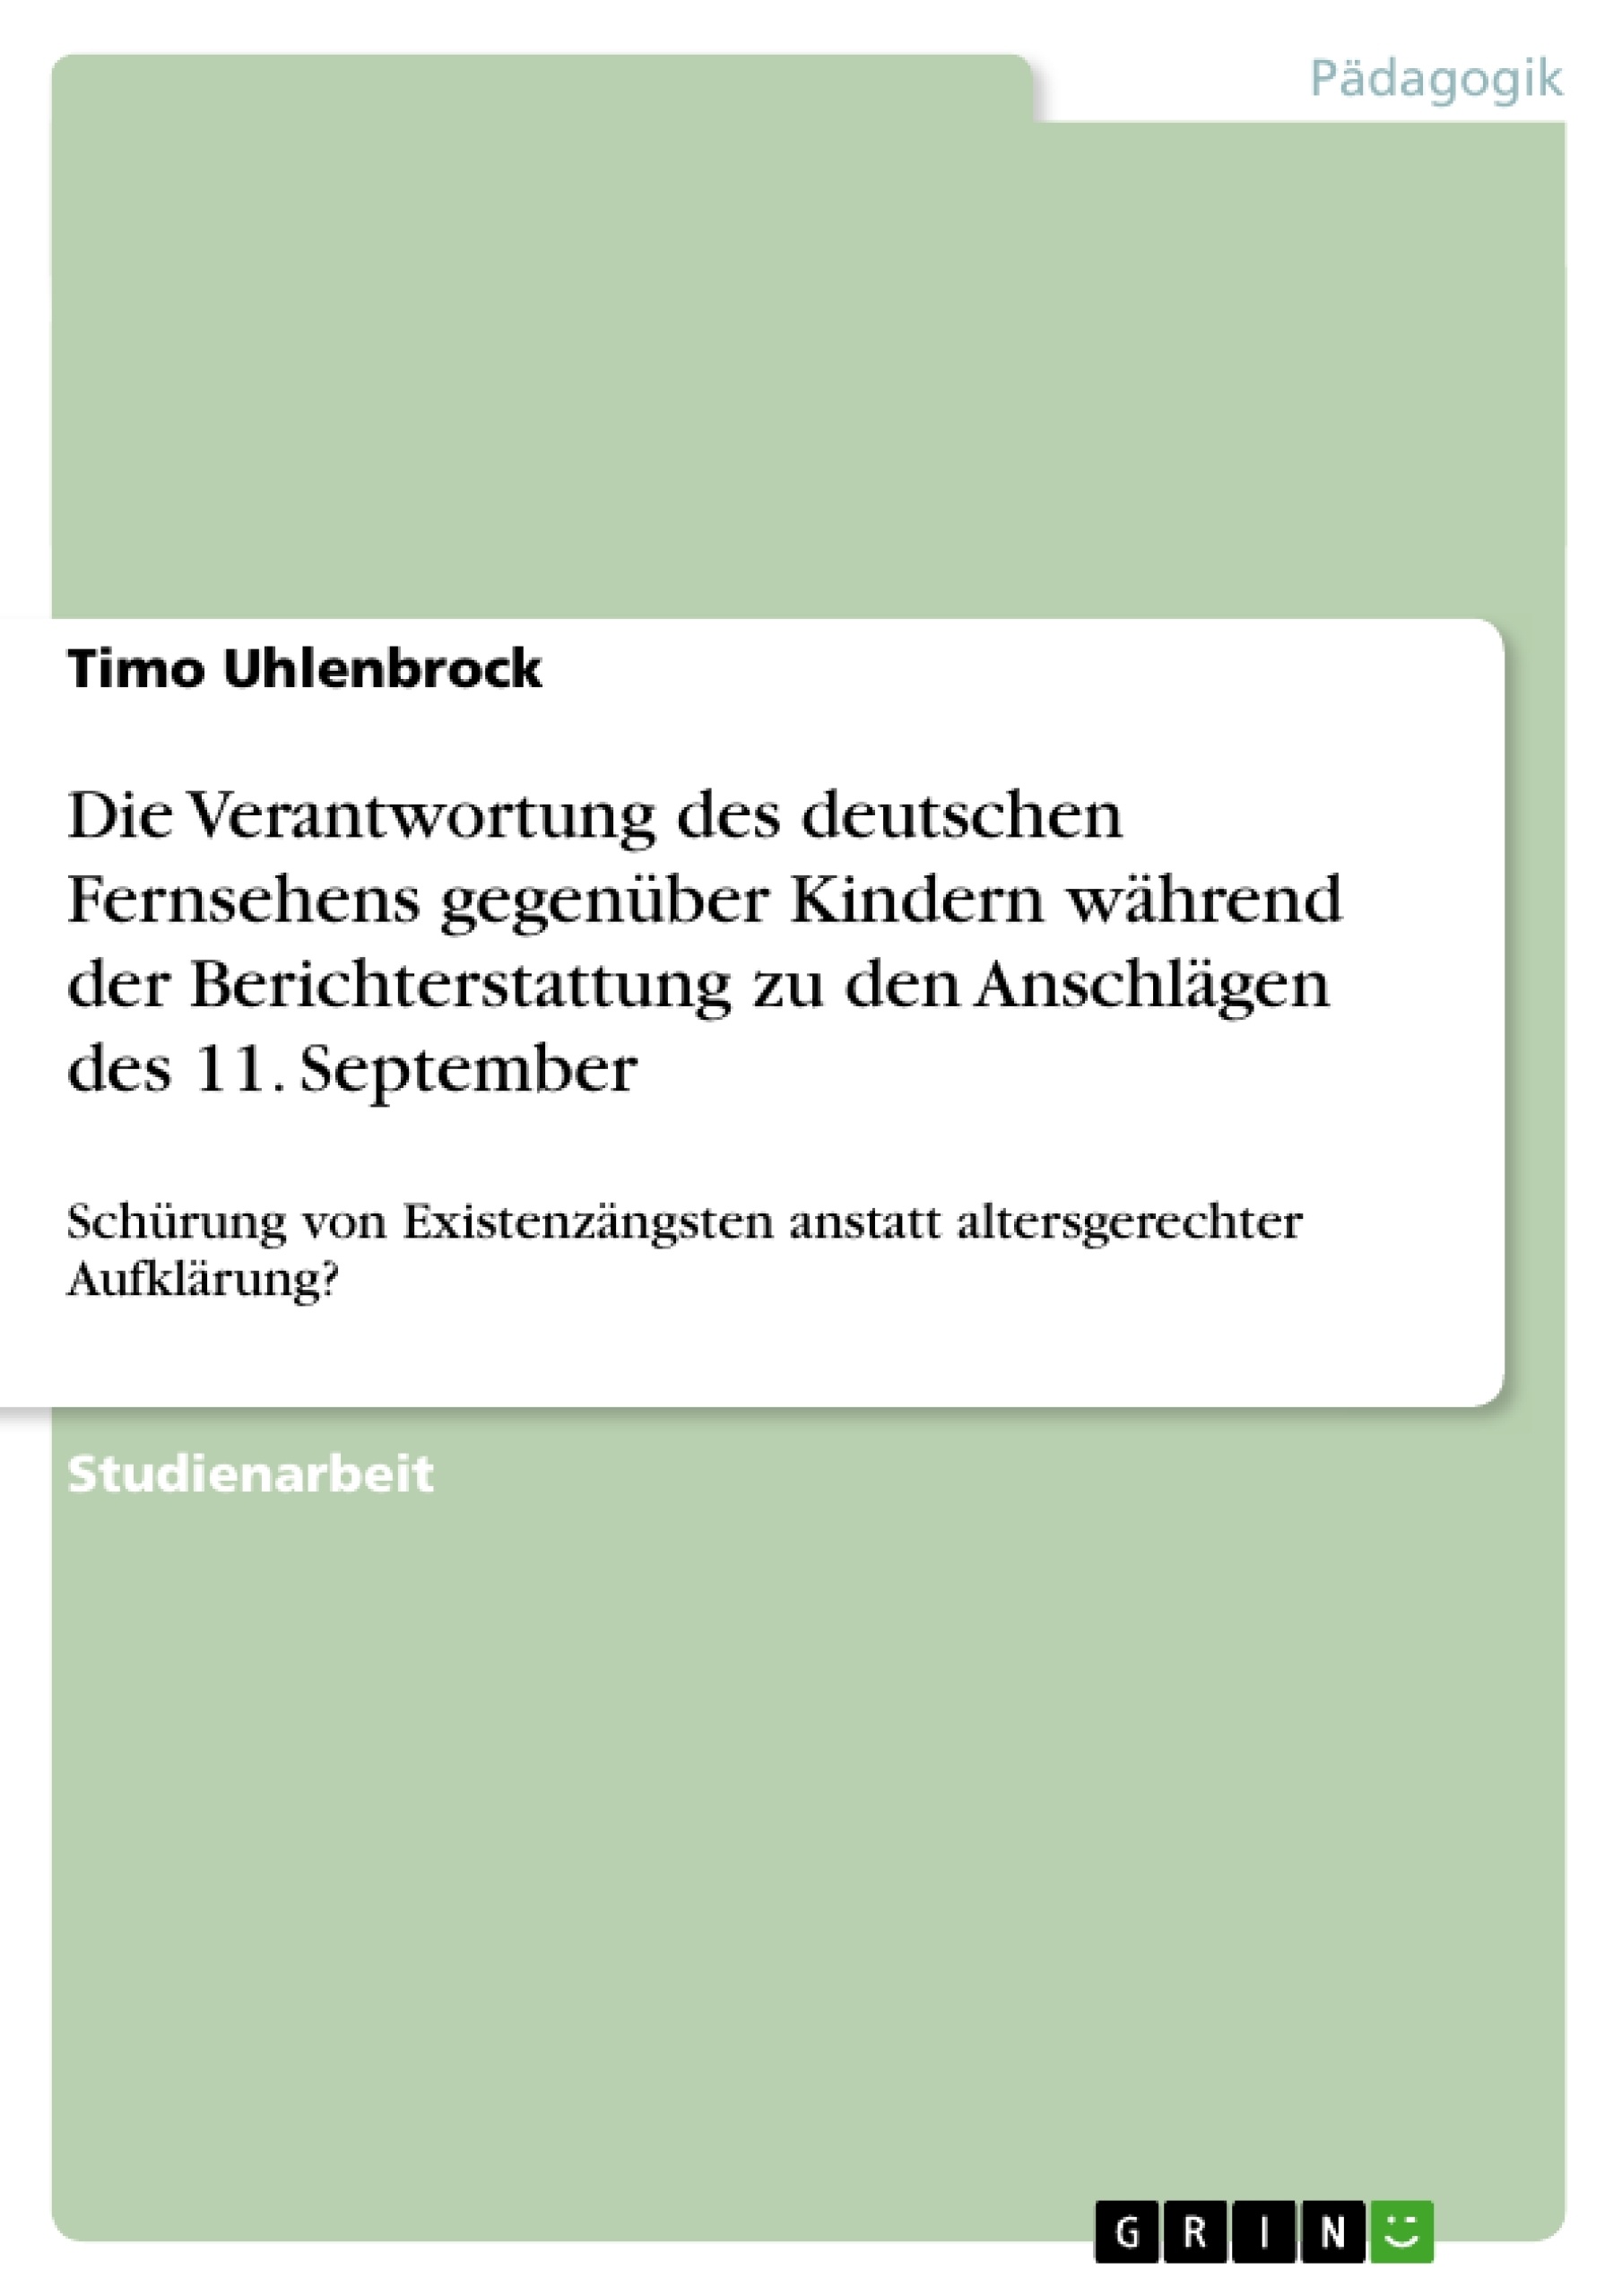 Título: Die Verantwortung des deutschen Fernsehens gegenüber Kindern während der Berichterstattung zu den Anschlägen des 11. September 